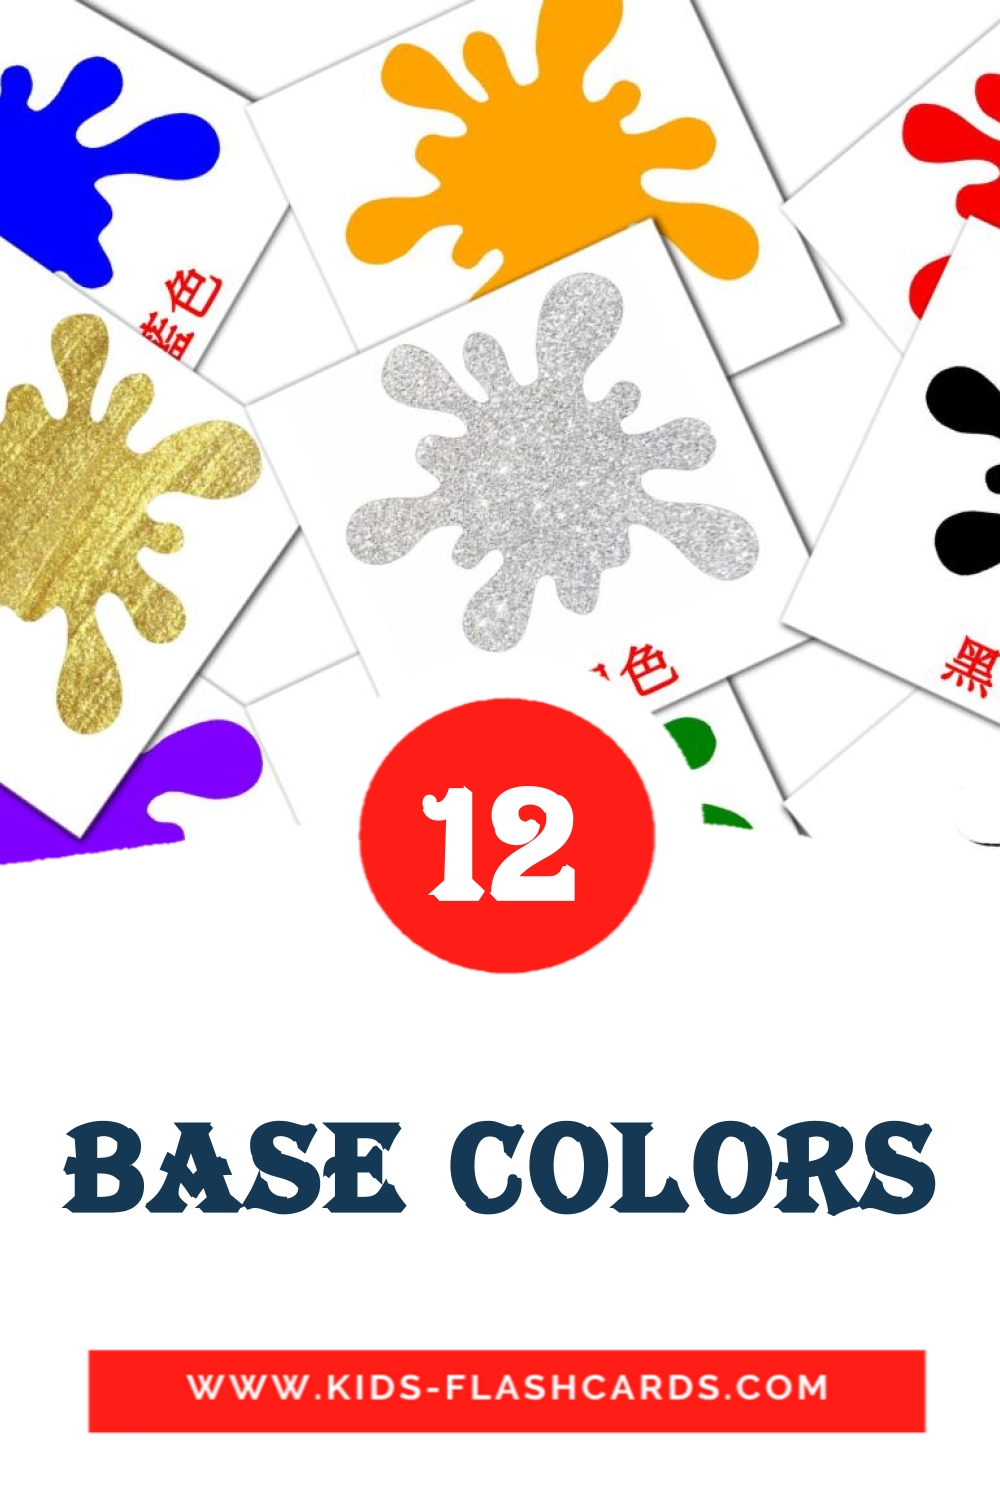 12 tarjetas didacticas de base colors para el jardín de infancia en chino(tradicional)